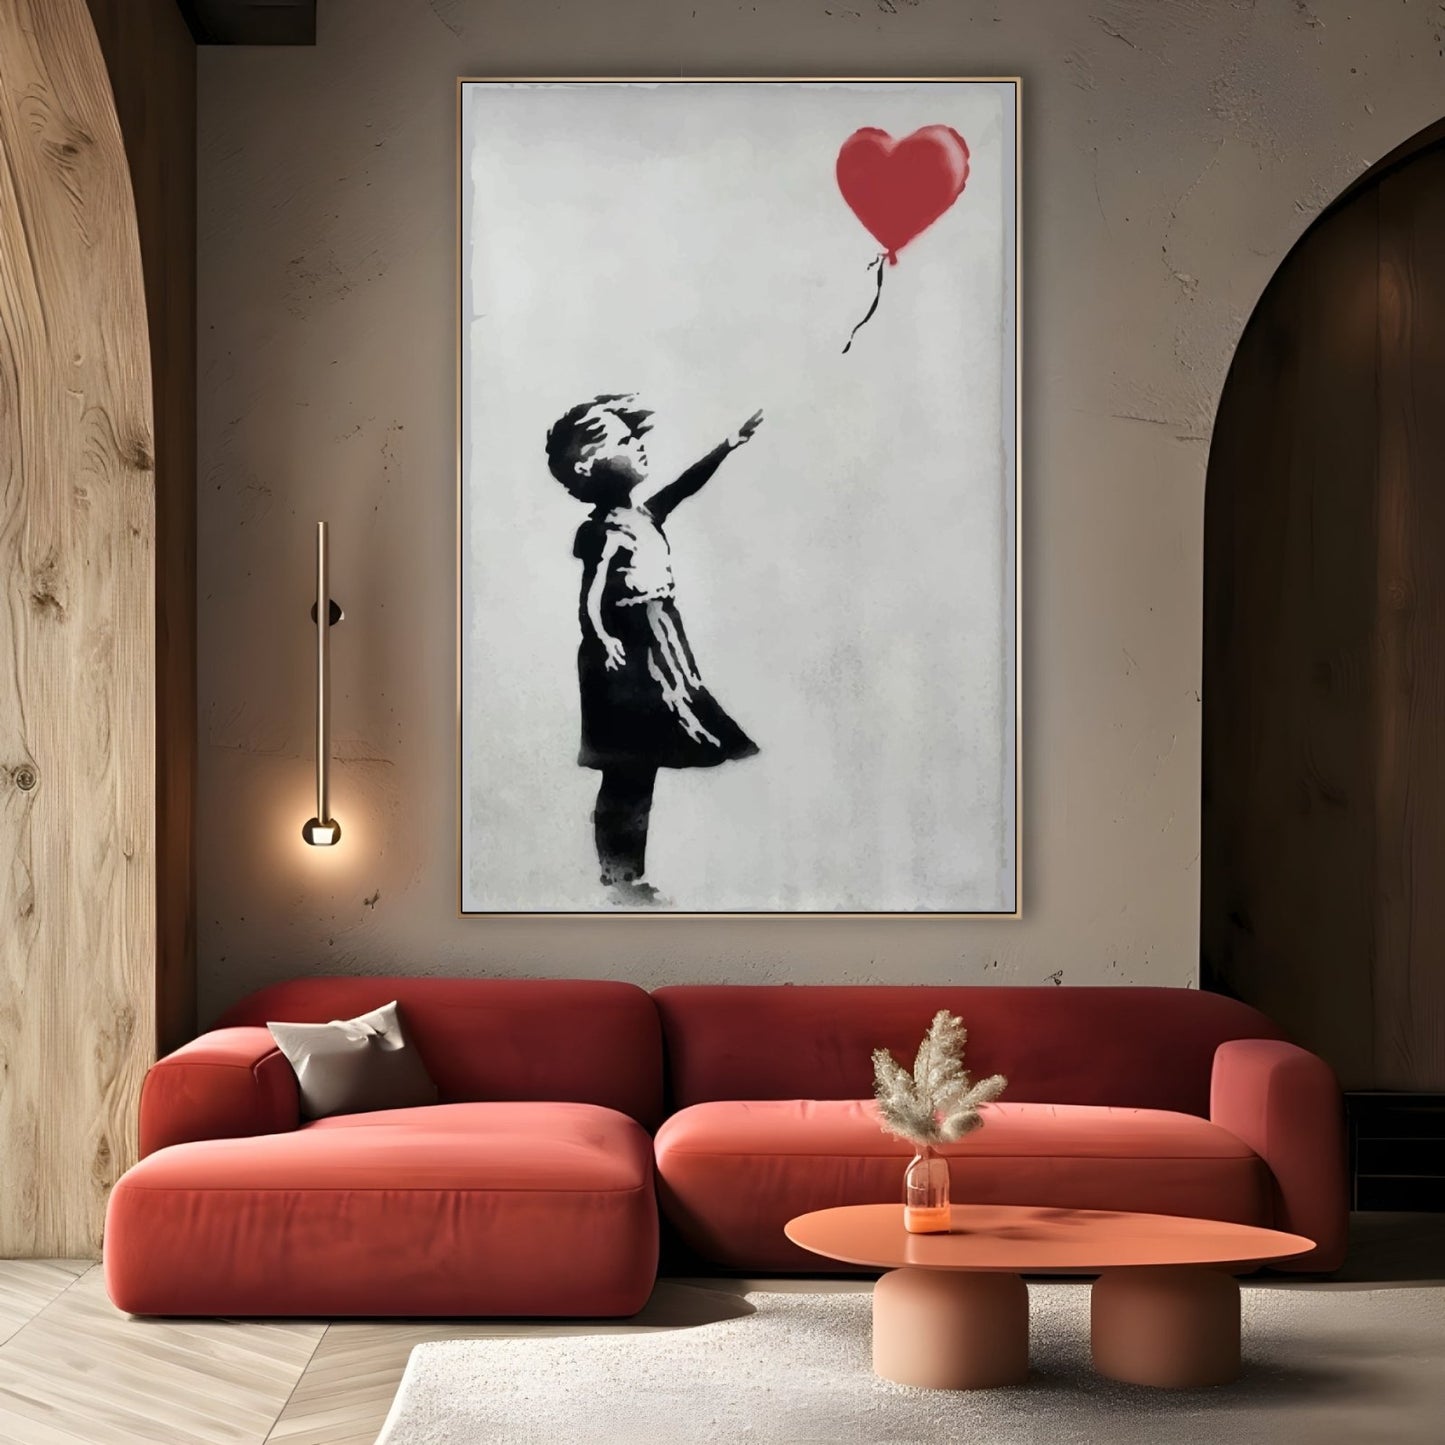 Balonowa dziewczyna, Banksy